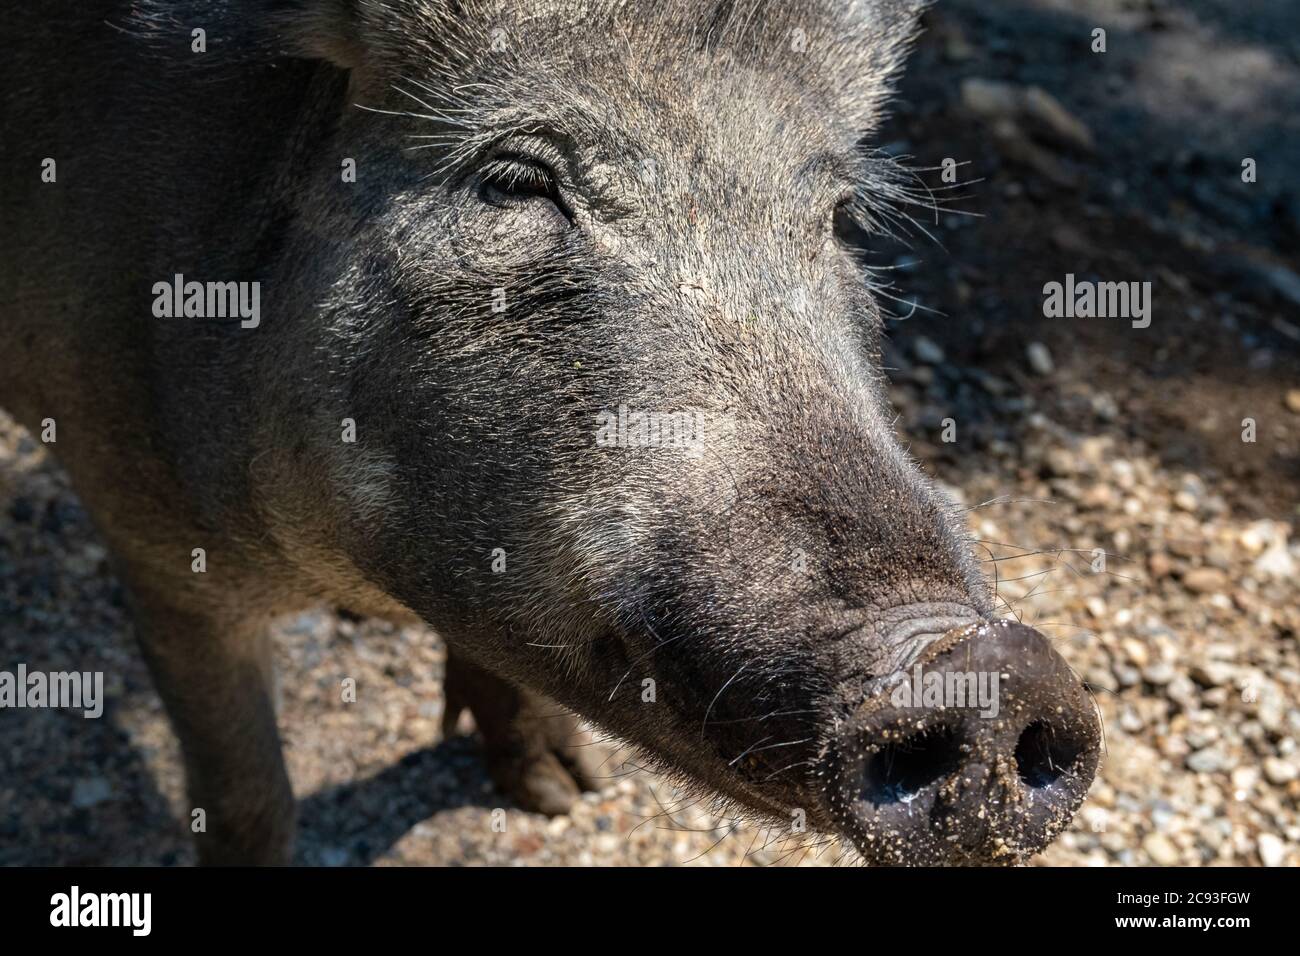 Il volto di un cinghiale, un maiale della specie Sus scrofa, è visto da vicino, mostrando il dettaglio dei suoi capelli e sabbia attaccata al suo muso. Foto Stock